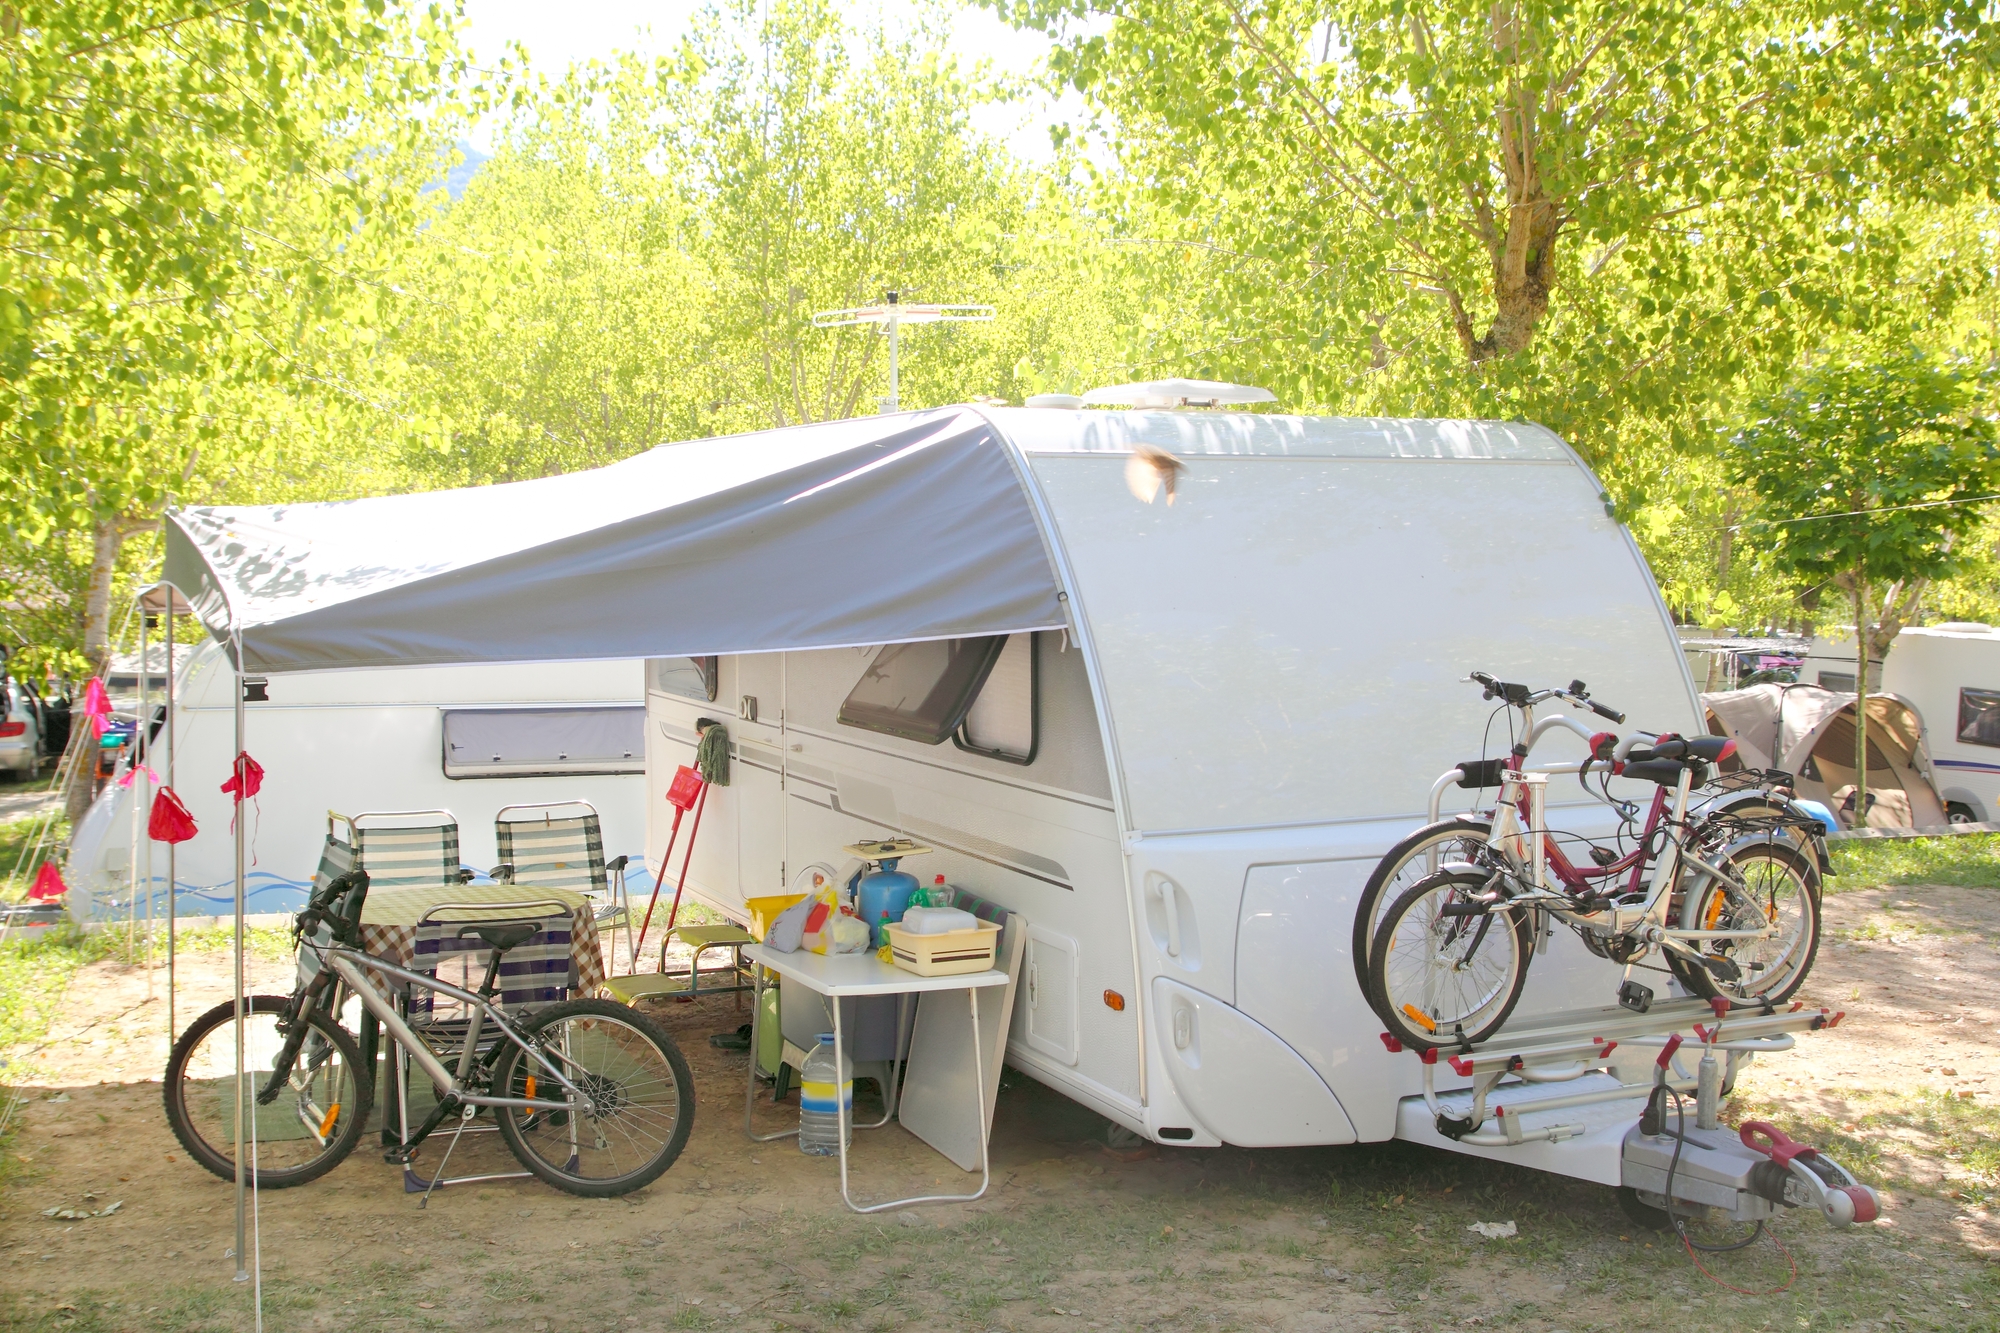 L'alliance des Castels et de Camping Qualité marque le signe d’un nouvel élan sur le secteur du camping en France - Crédit Depositphotos